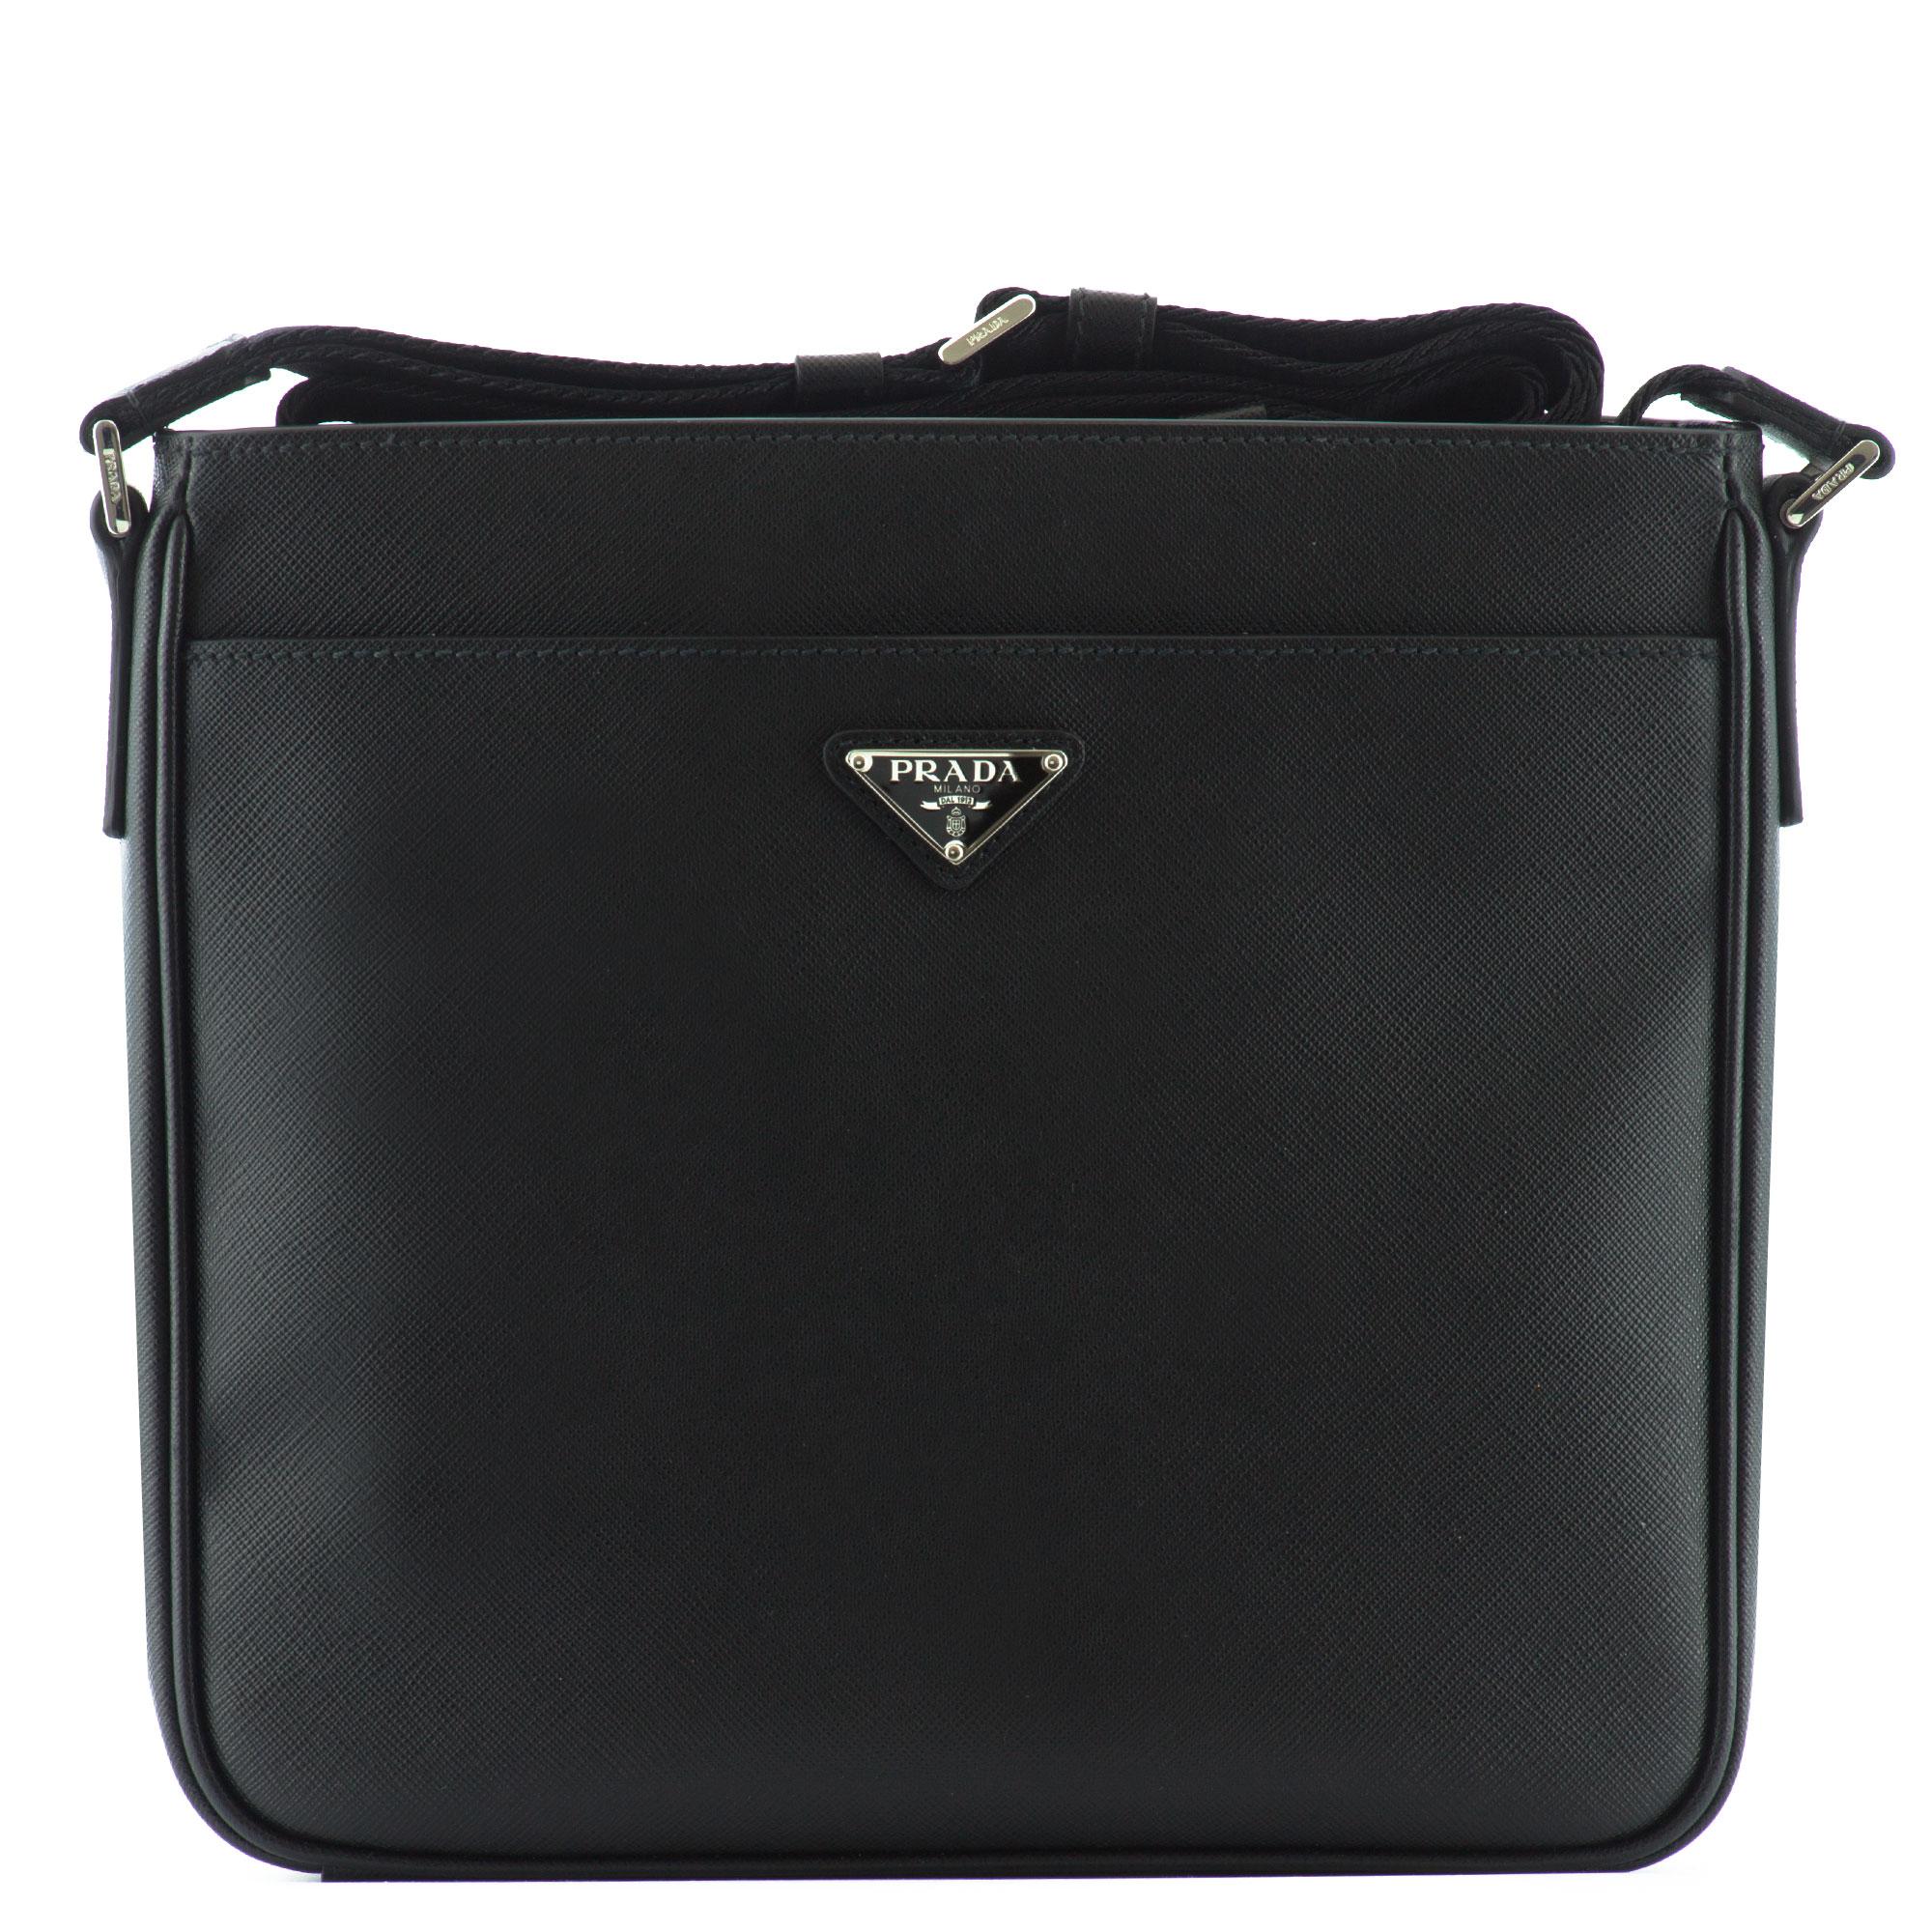 Lyst - Prada Saffiano Leather Shoulder Bag in Black for Men